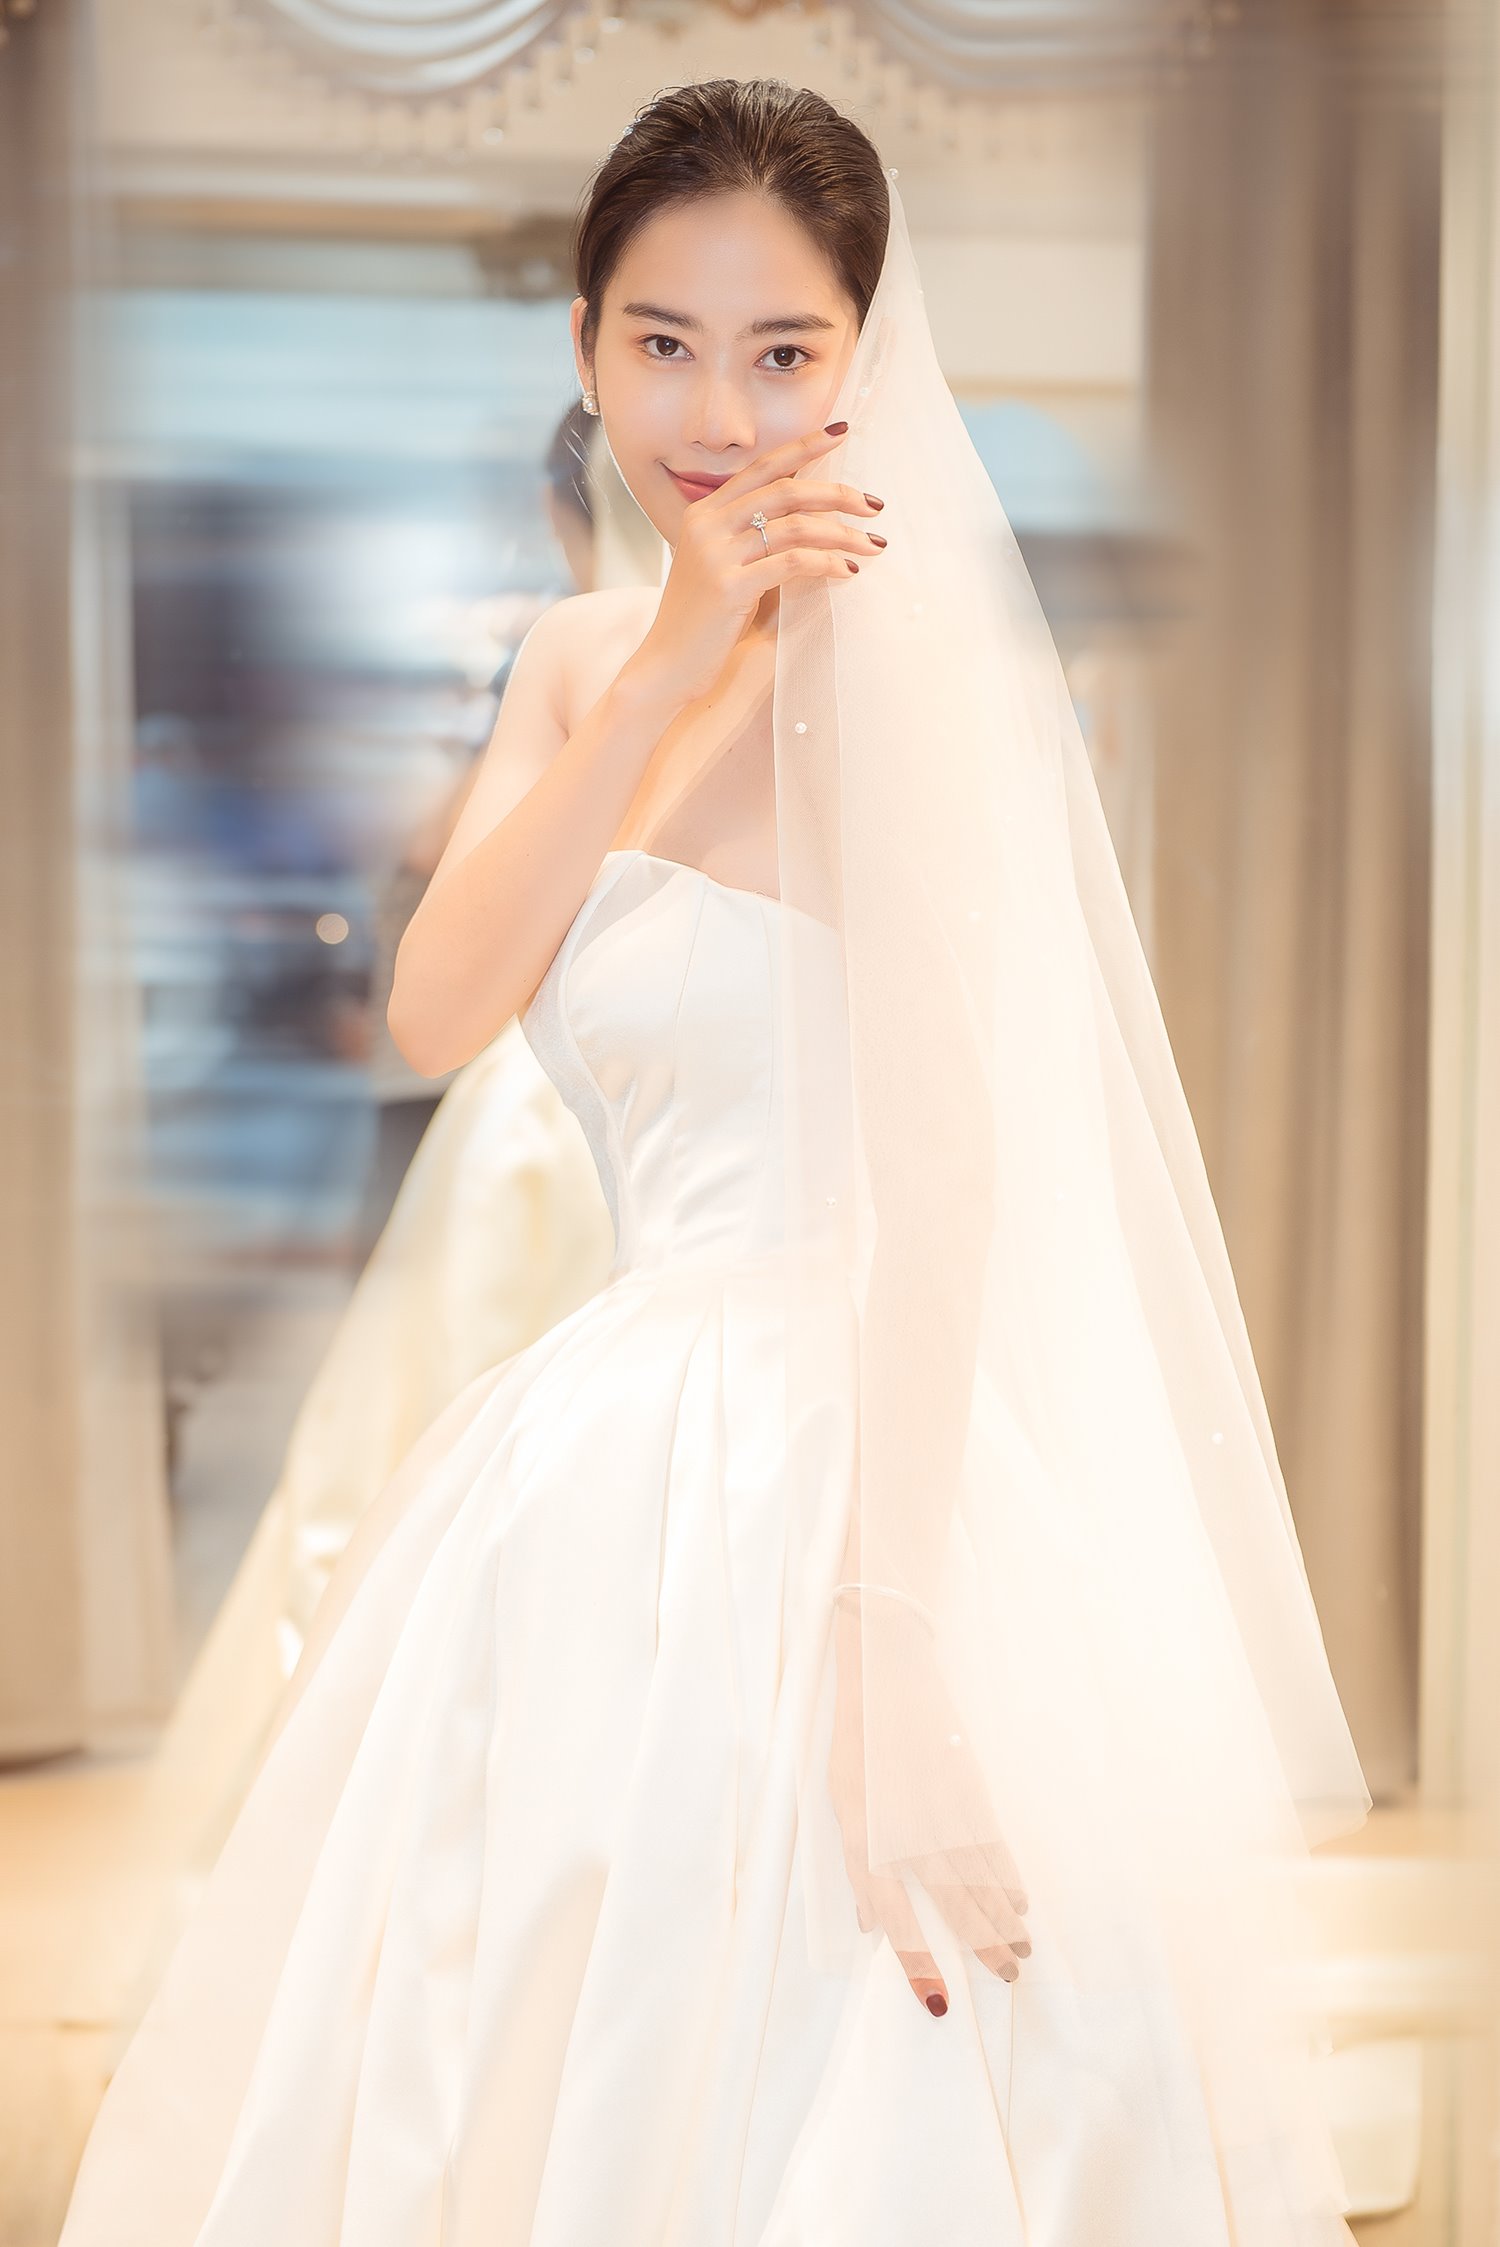 2020 Mẫu áo váy cưới đơn giản đẹp tinh tế sang trọng mà thanh lịch